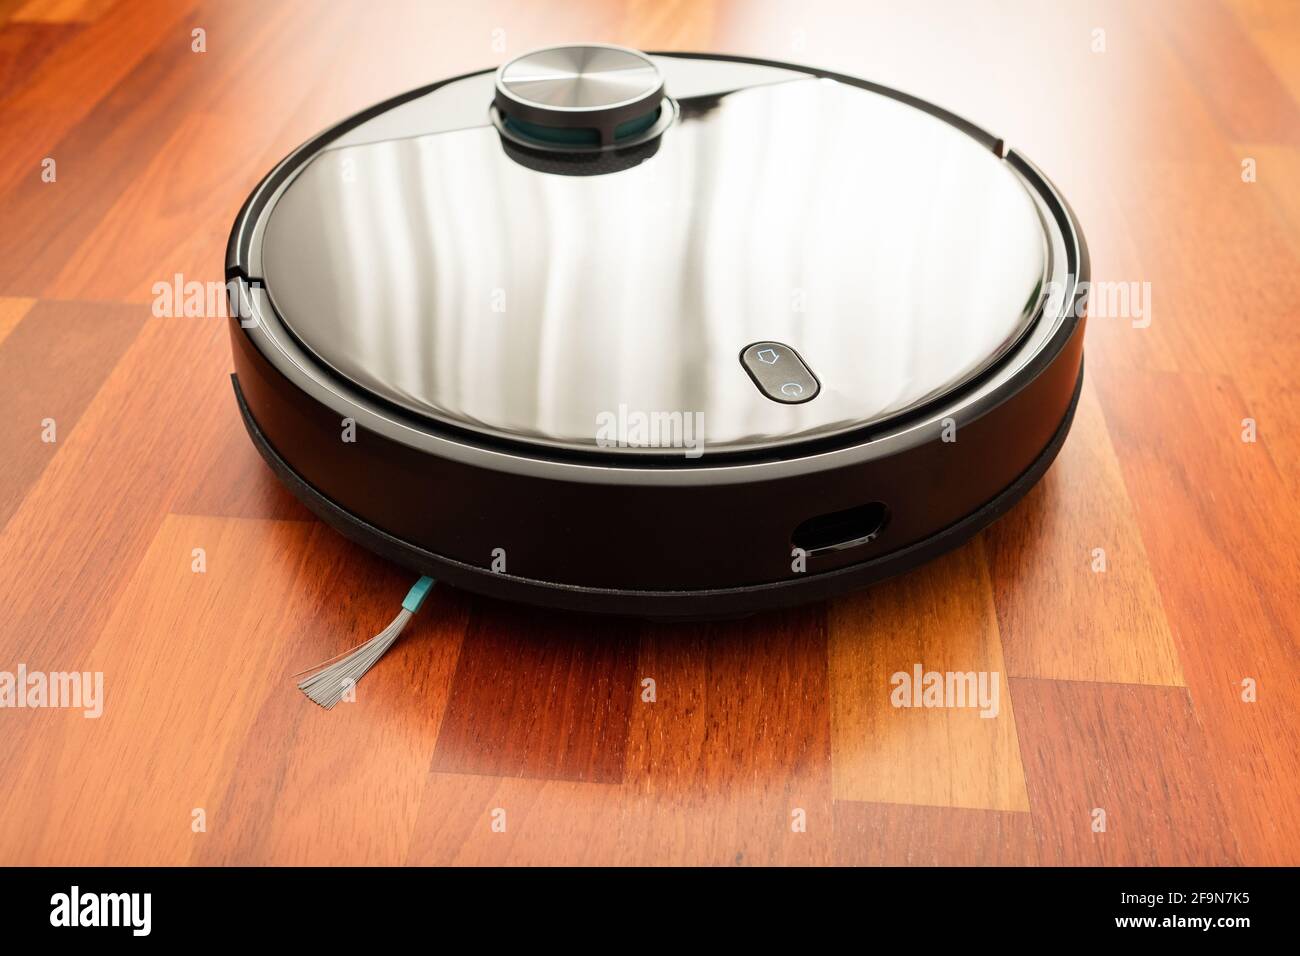 Schwarzer automatischer Staubsauger-Roboter in einem Haus, um den Boden zu  reinigen und bei der Hausarbeit zu helfen. Smart Home, Internet der Dinge,  iot Stockfotografie - Alamy